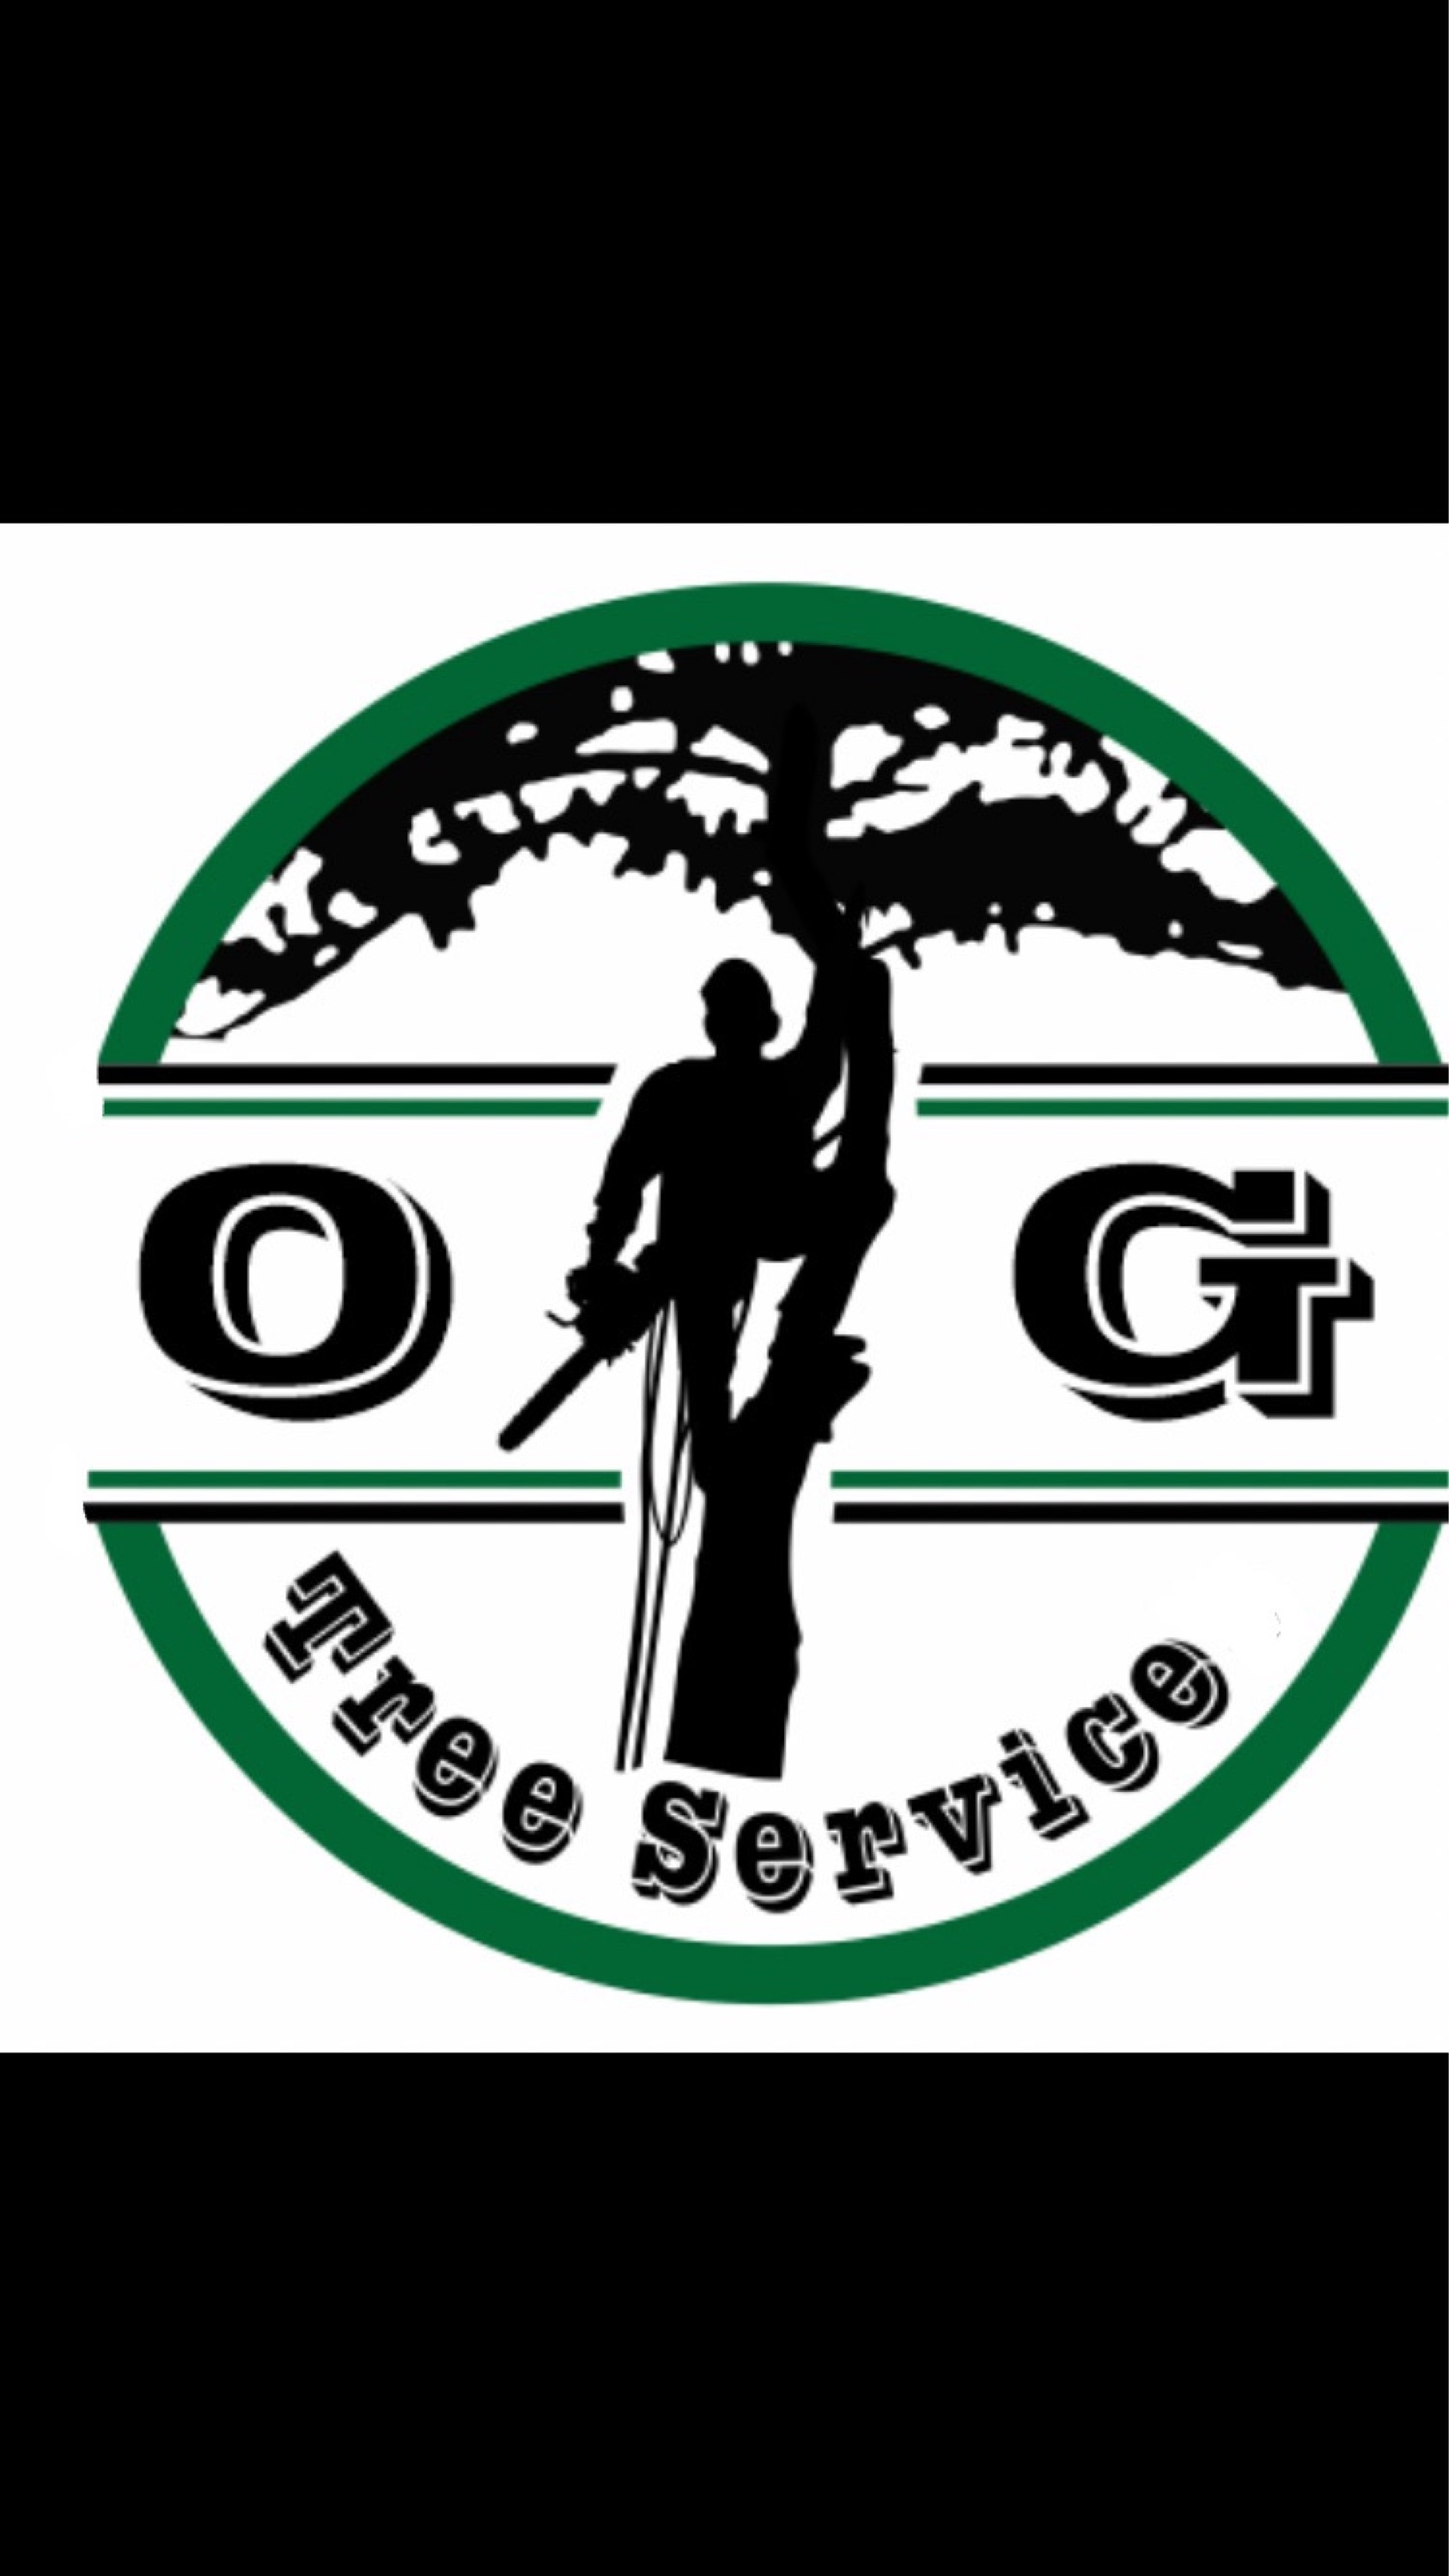 O.G Tree Service Logo